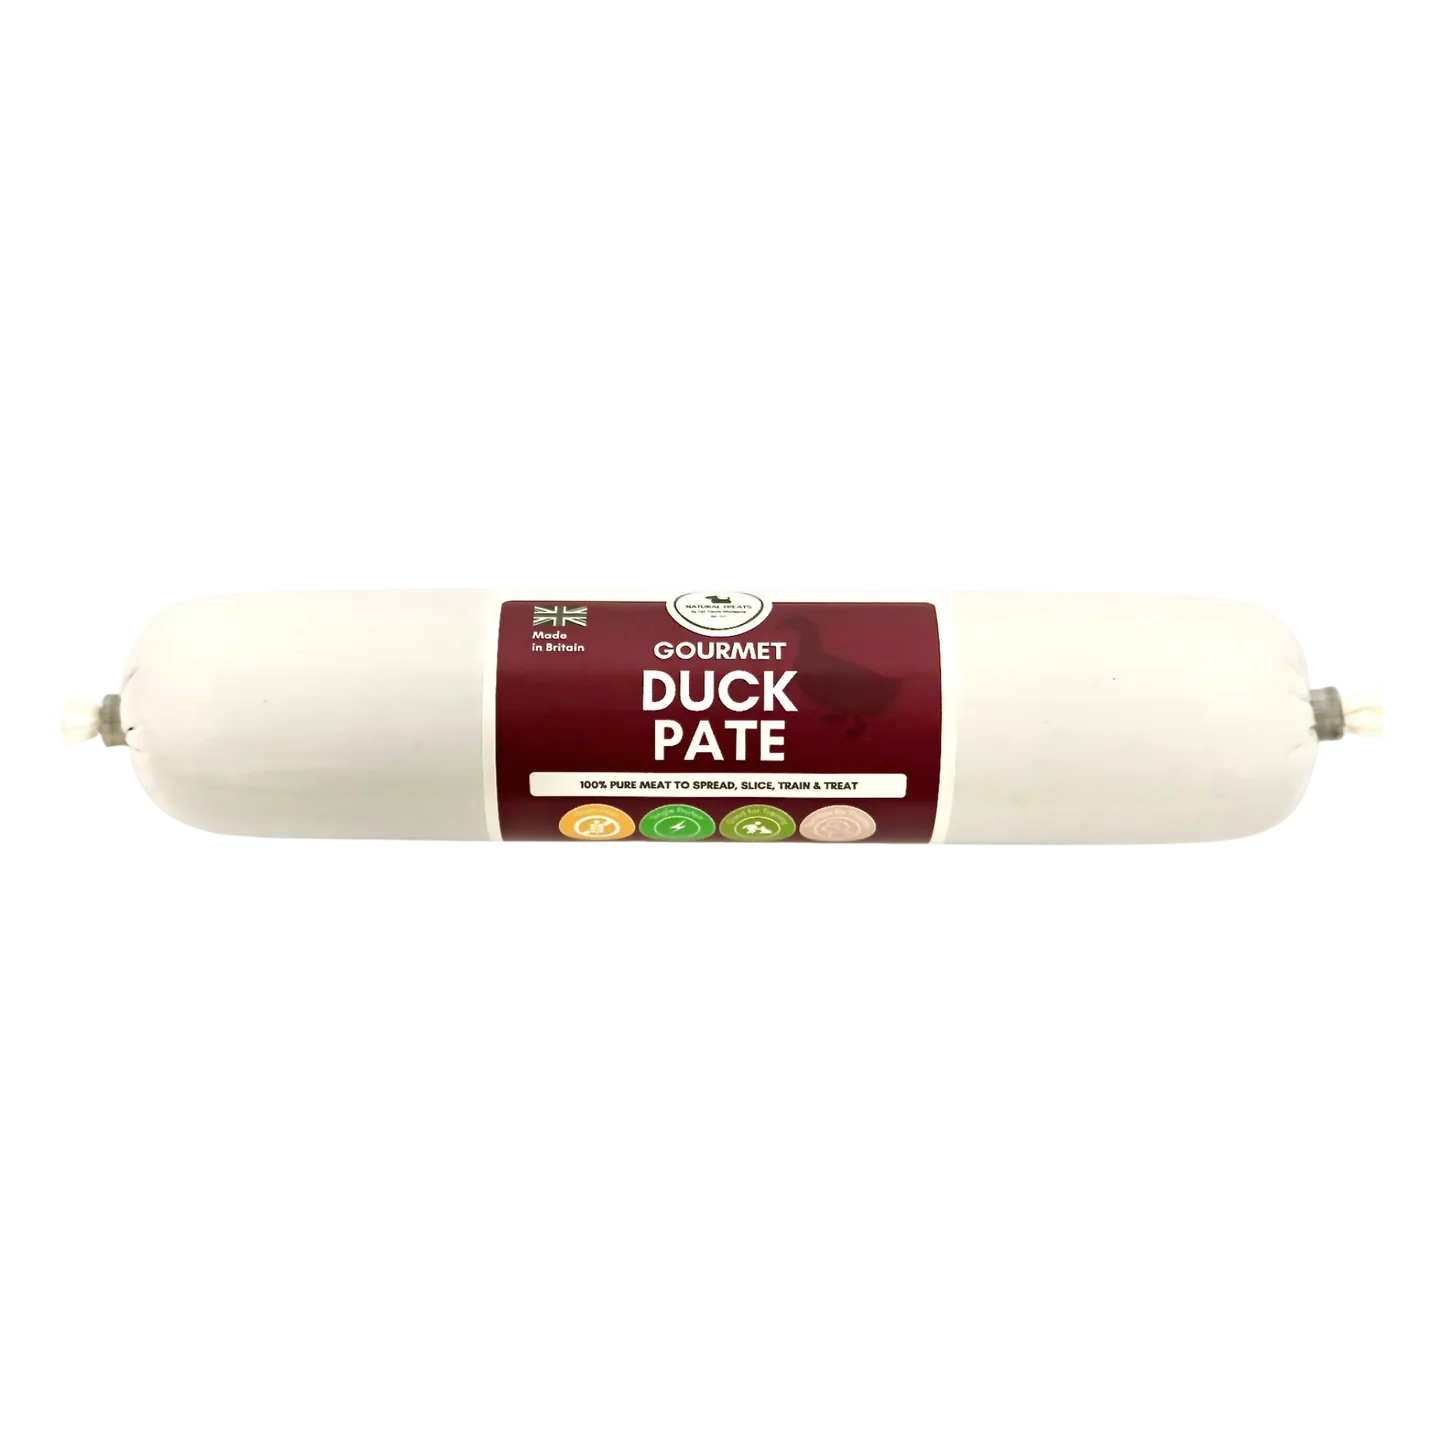 Gourmet Pate- Duck